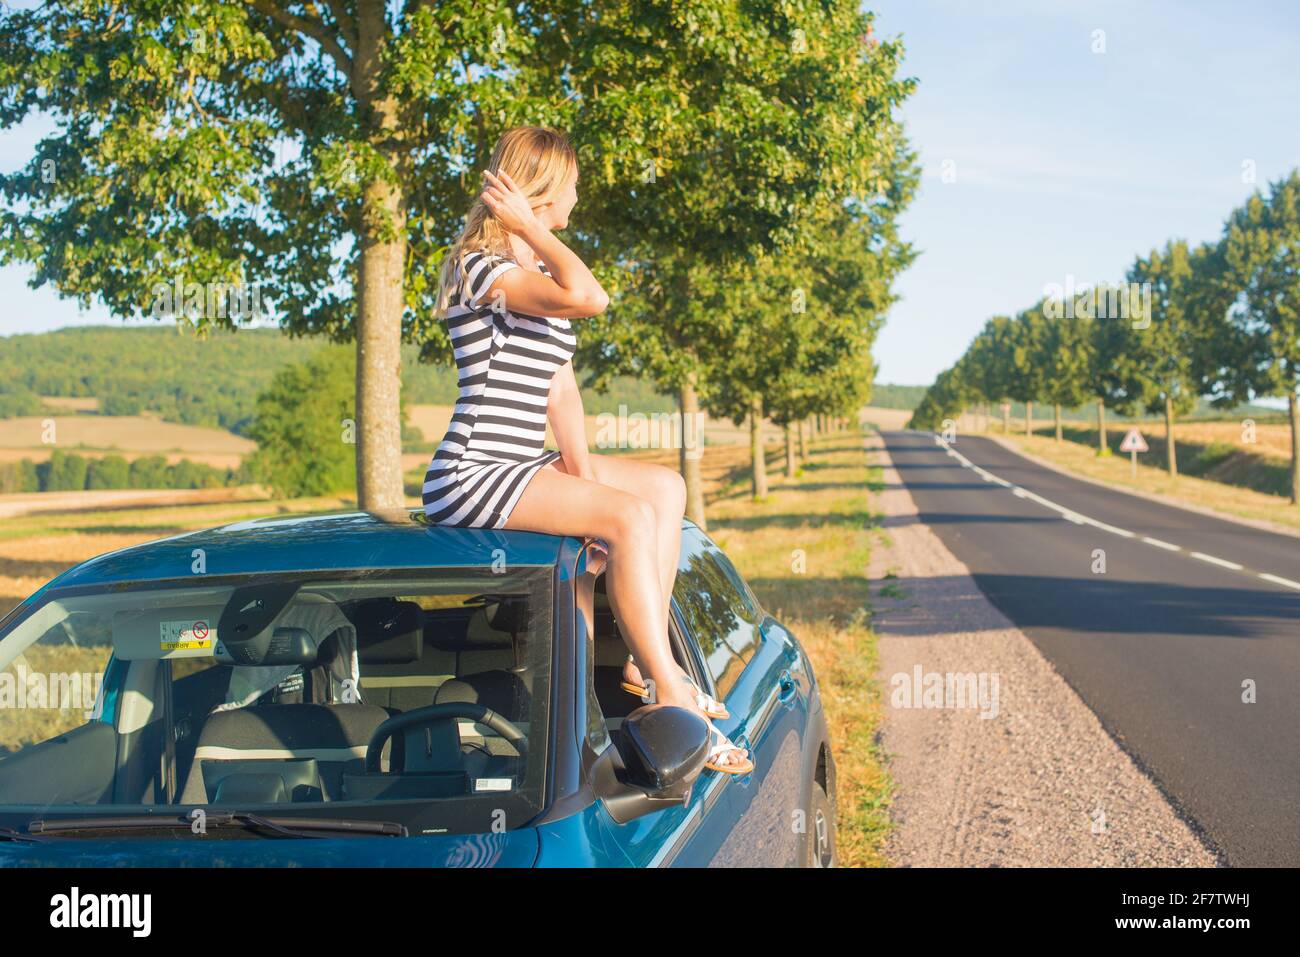 Vertikale Sicht Auf Eine Männliche Mädchenfigur Auf Dem Armaturenbrett  Eines Klassischen Amerikanischen Autos an Einem Regnerische Redaktionelles  Stockbild - Bild von vertikal, mädchen: 259843819